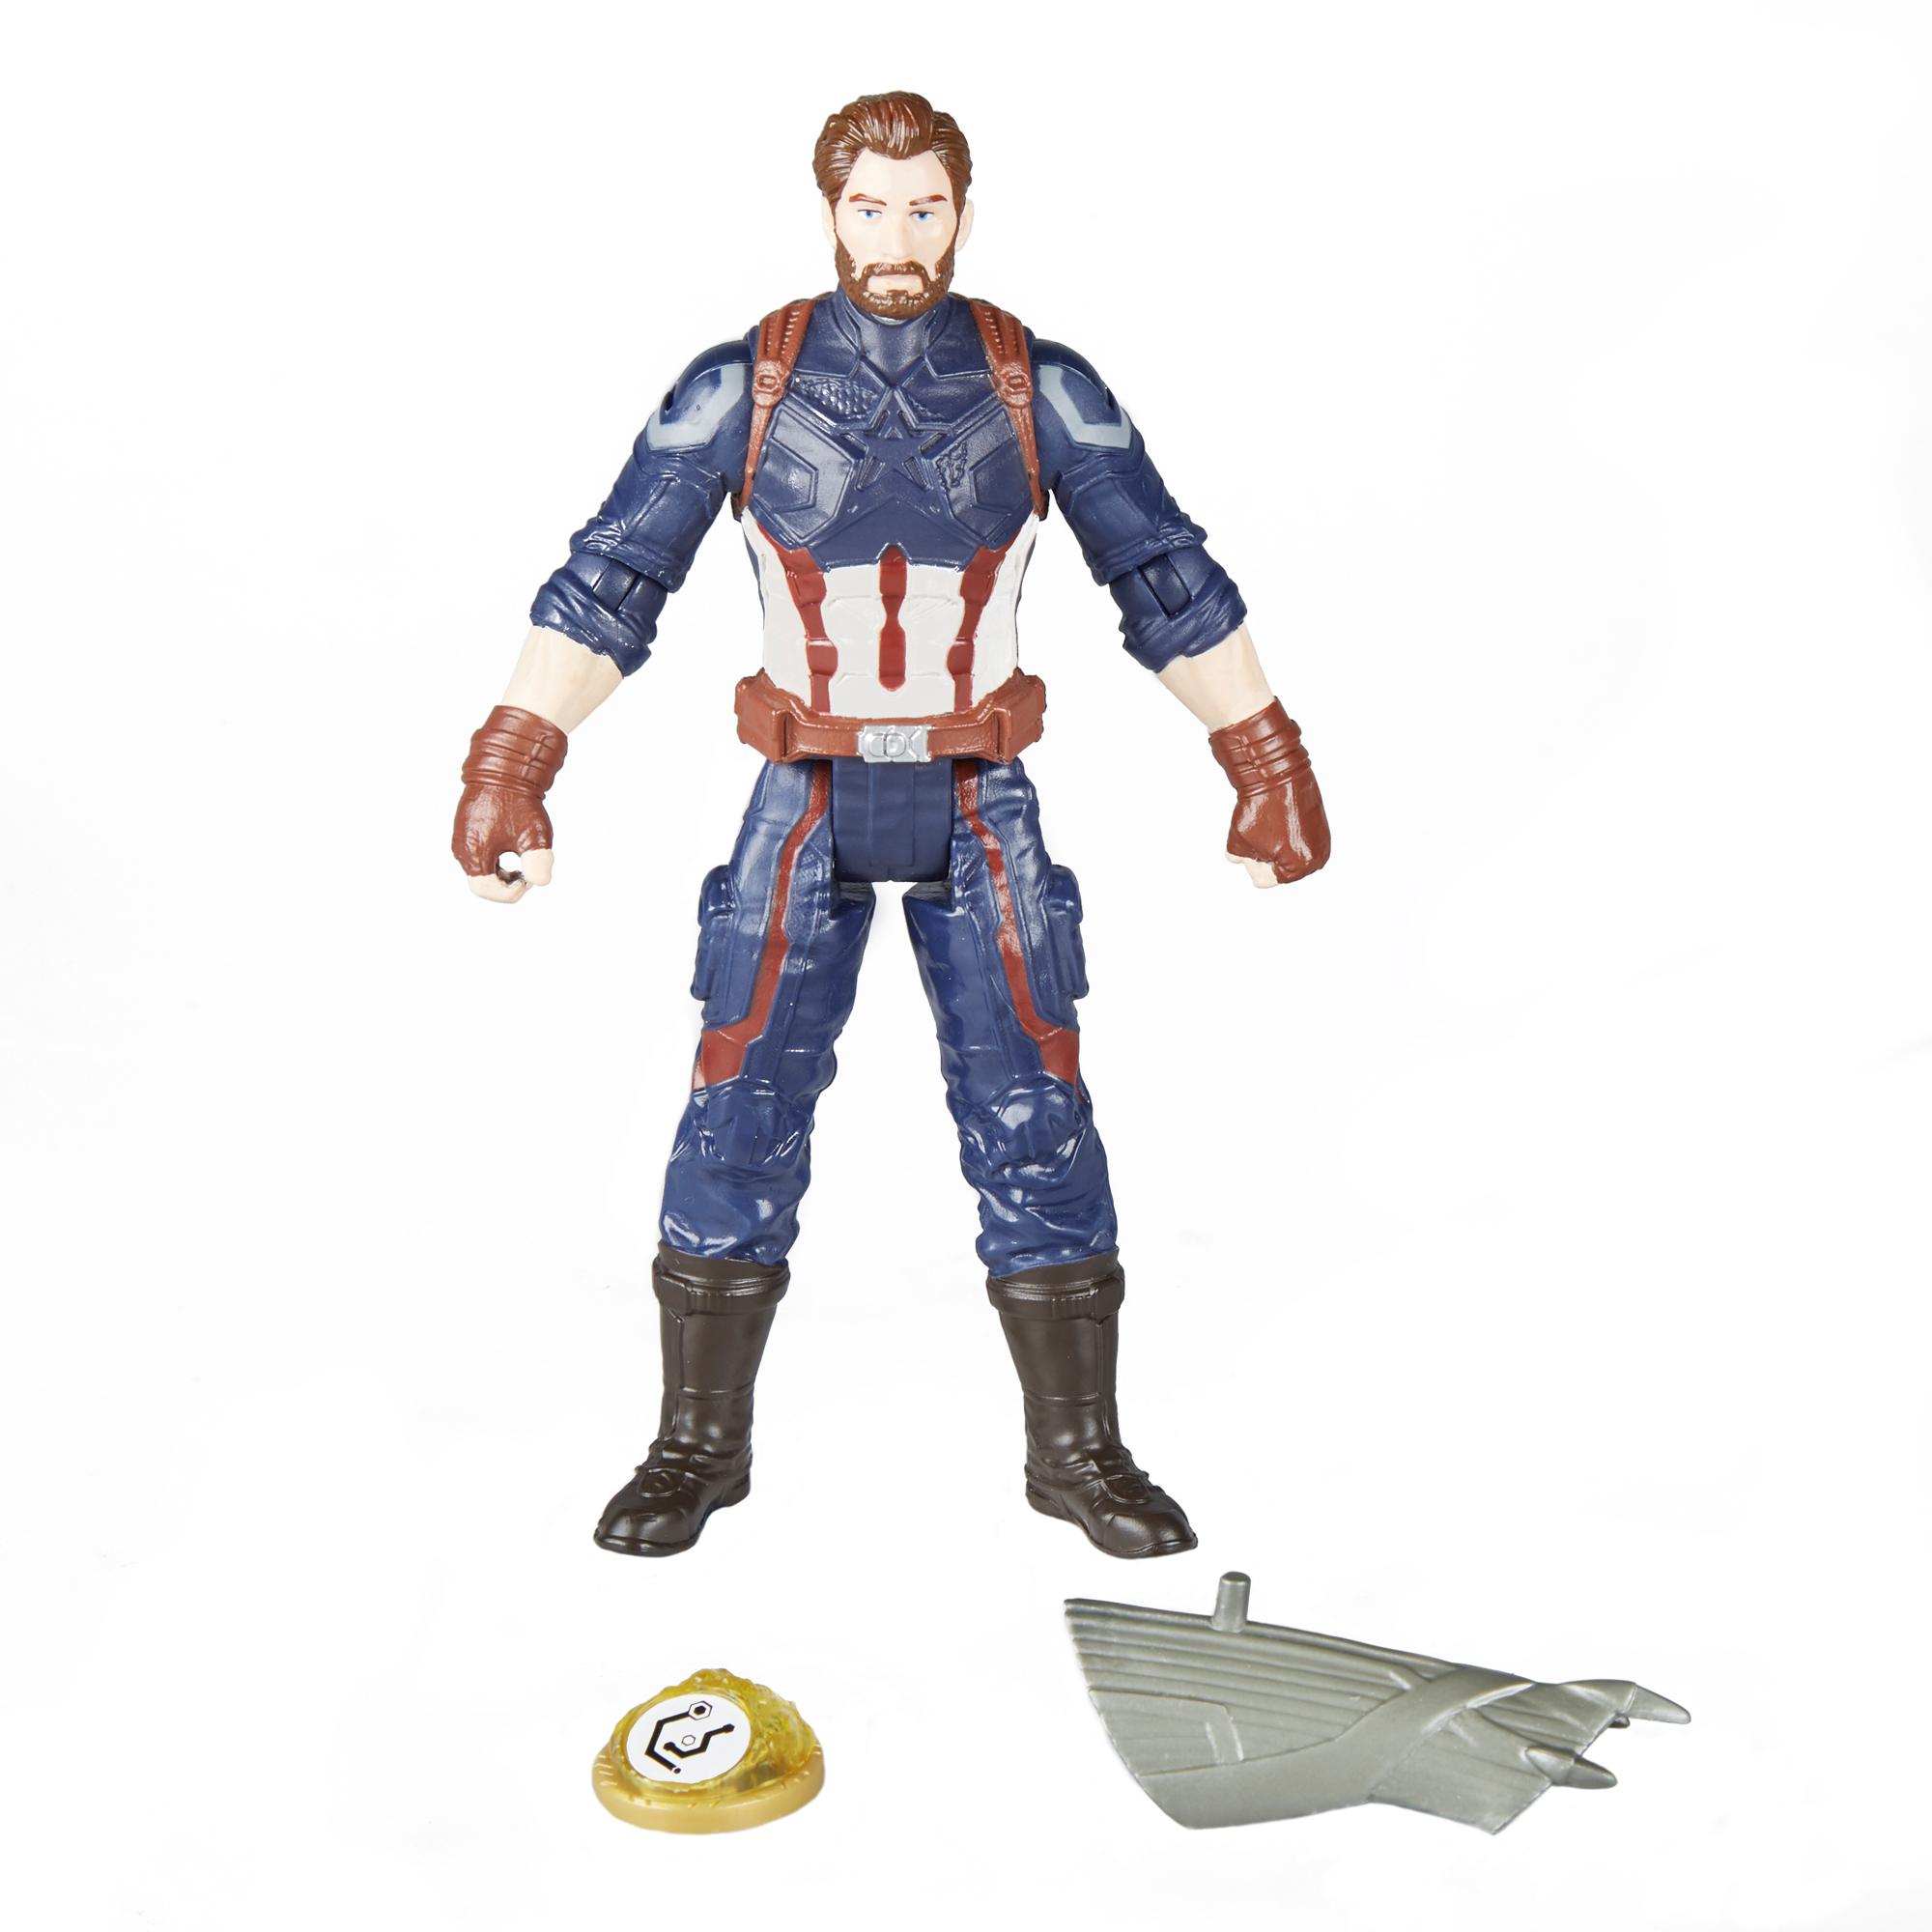 Фигурка Мстителя с камнем бесконечности - Капитан Америка, 15 см